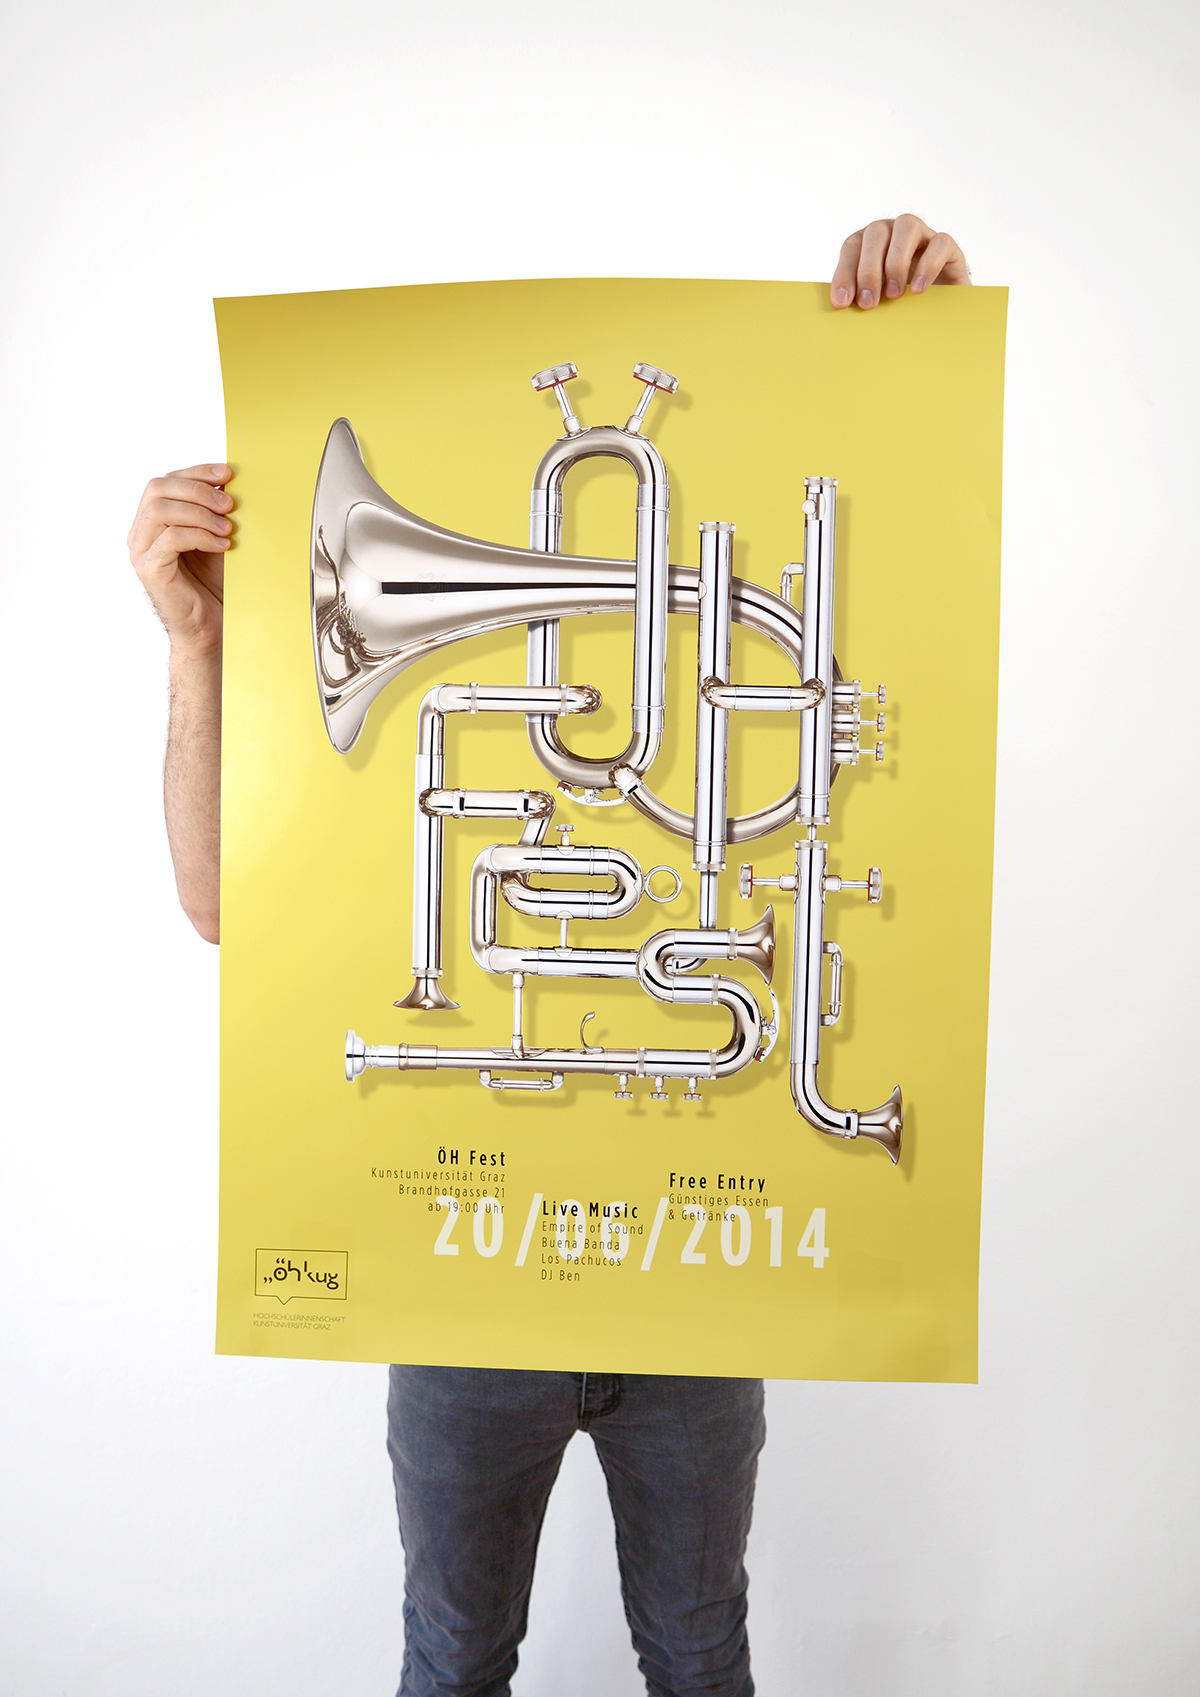 poster typo Adronauts ÖH-Fest vienna Patrick Pichler Wolfgang Warzilek music poster plakat typografie trompete instruments